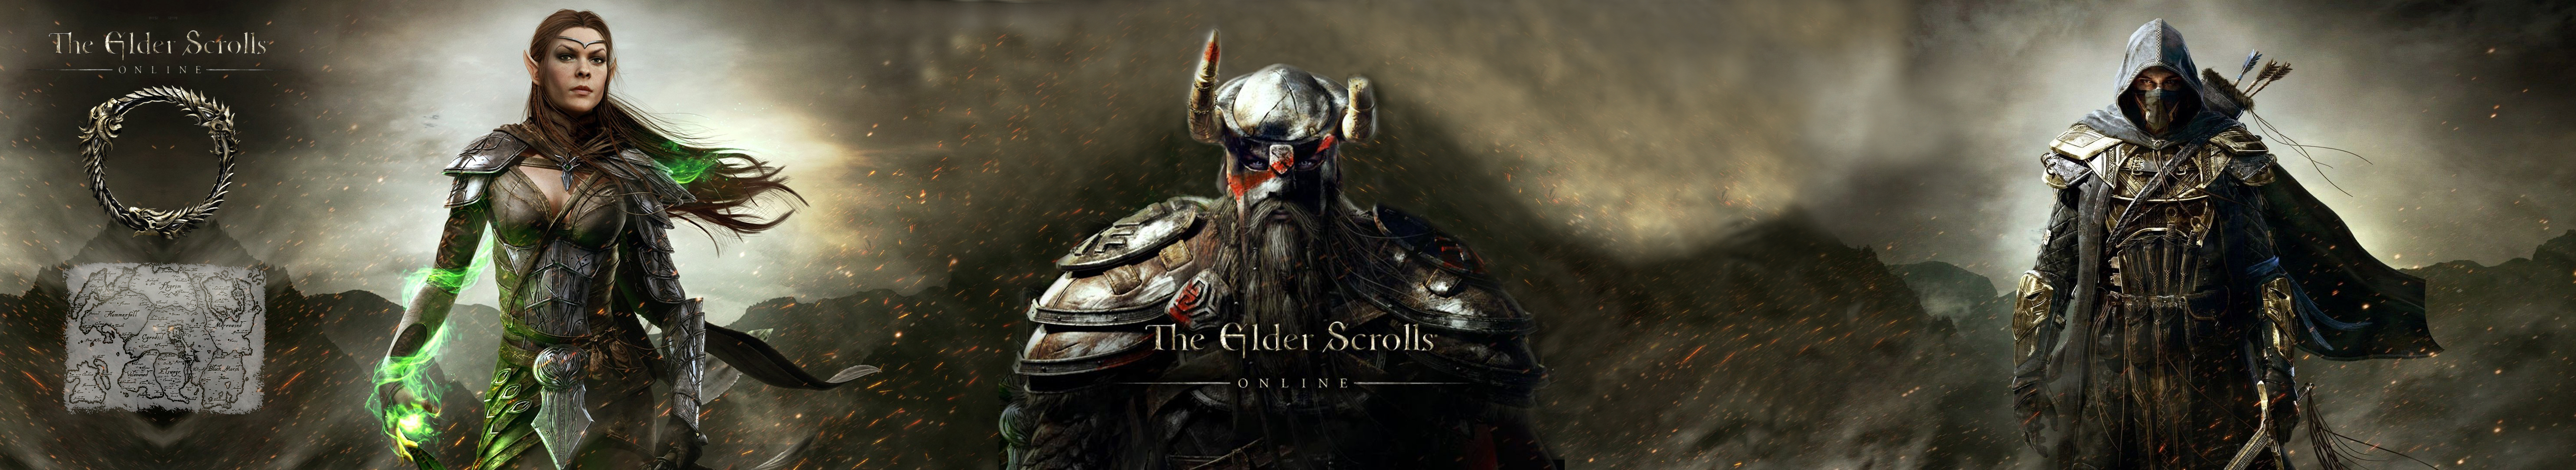 Eyefinity Surround Wallpaper Elder Scrolls Online